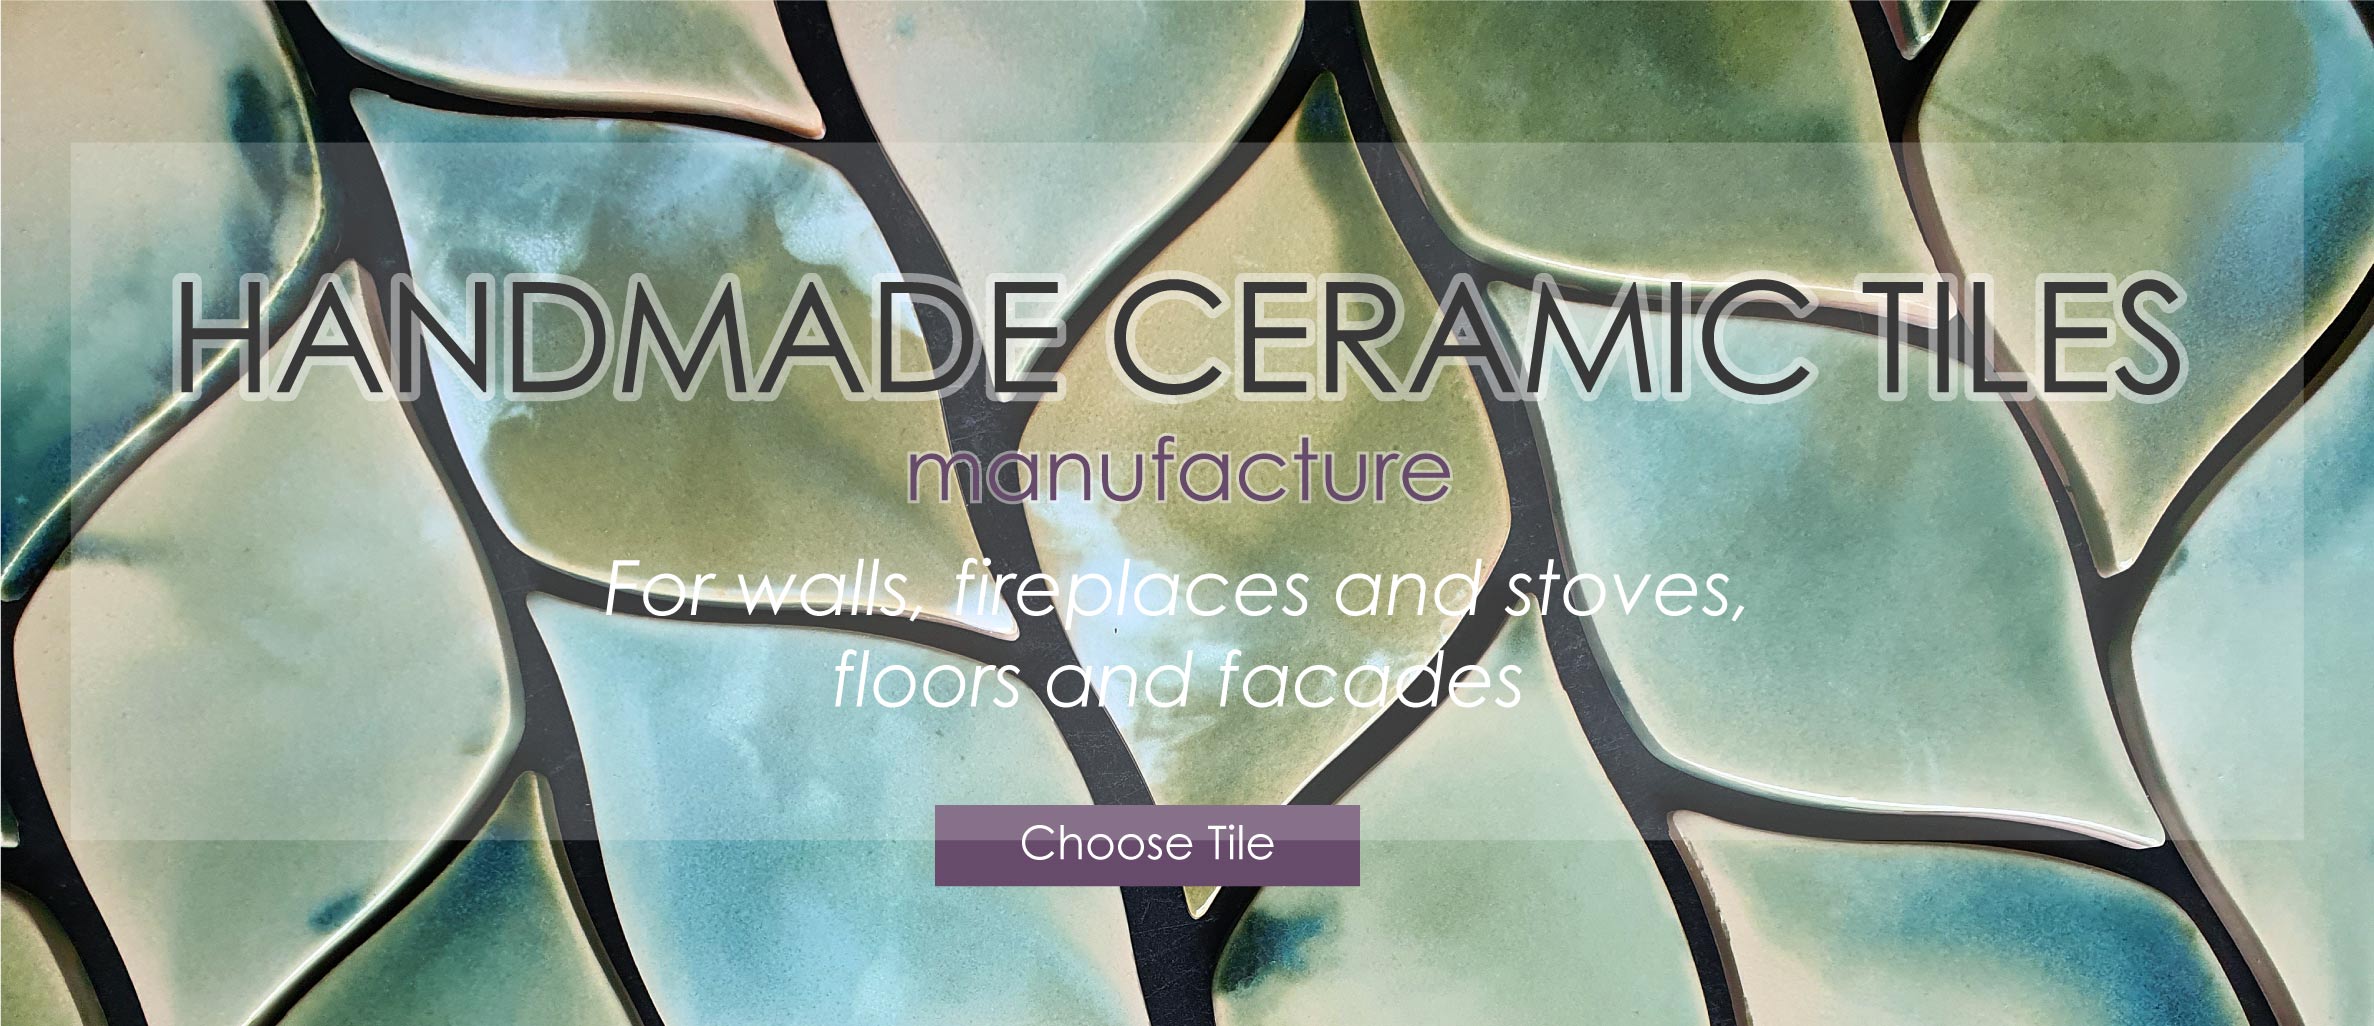 Handmade Ceramic Tiles Manufacture